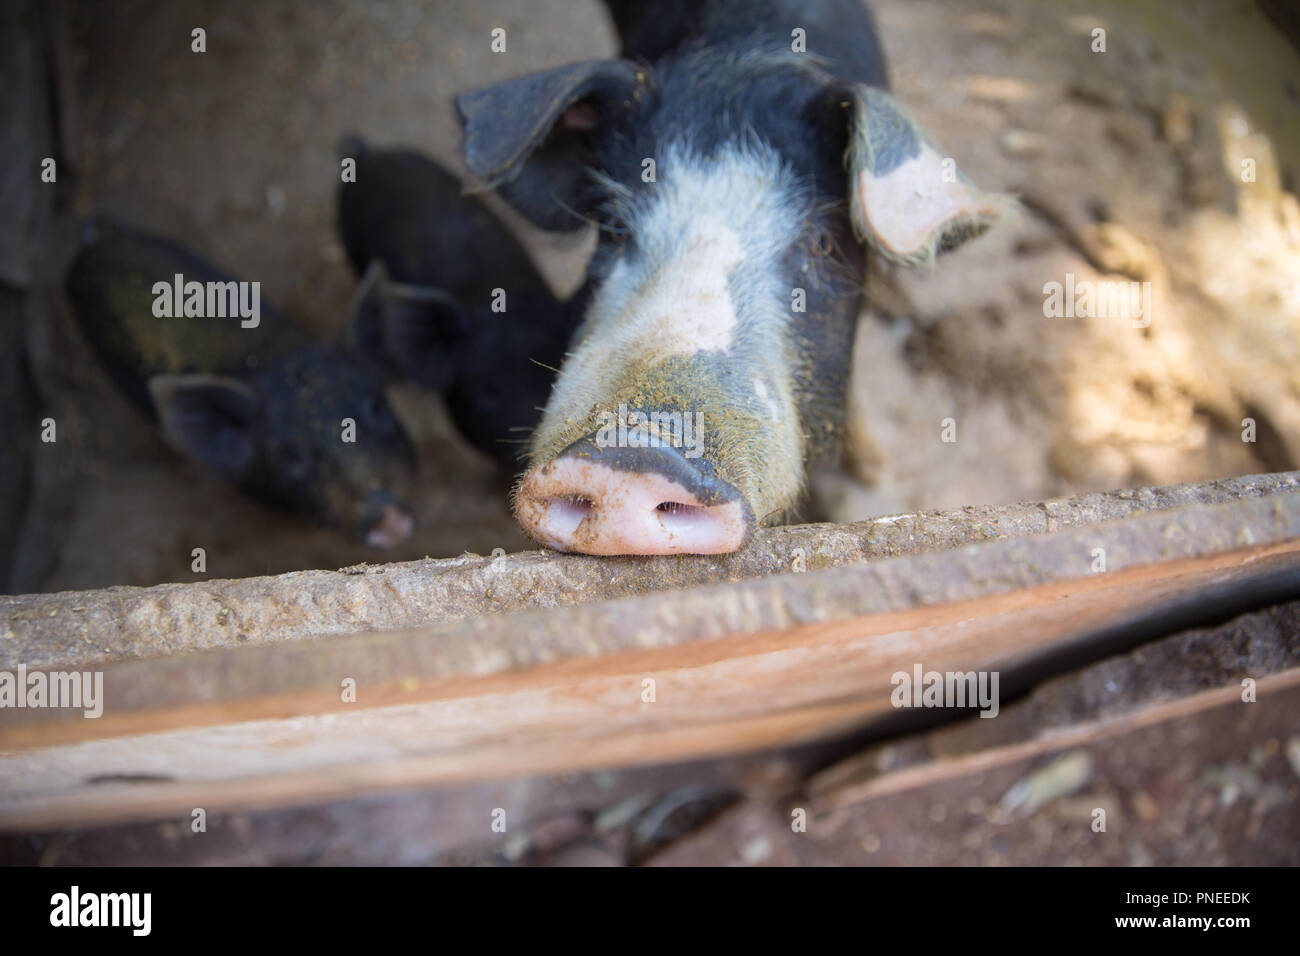 Schwein Nase im Pen. Schwerpunkt liegt auf der Nase. Geringe Tiefenschärfe. Stockfoto